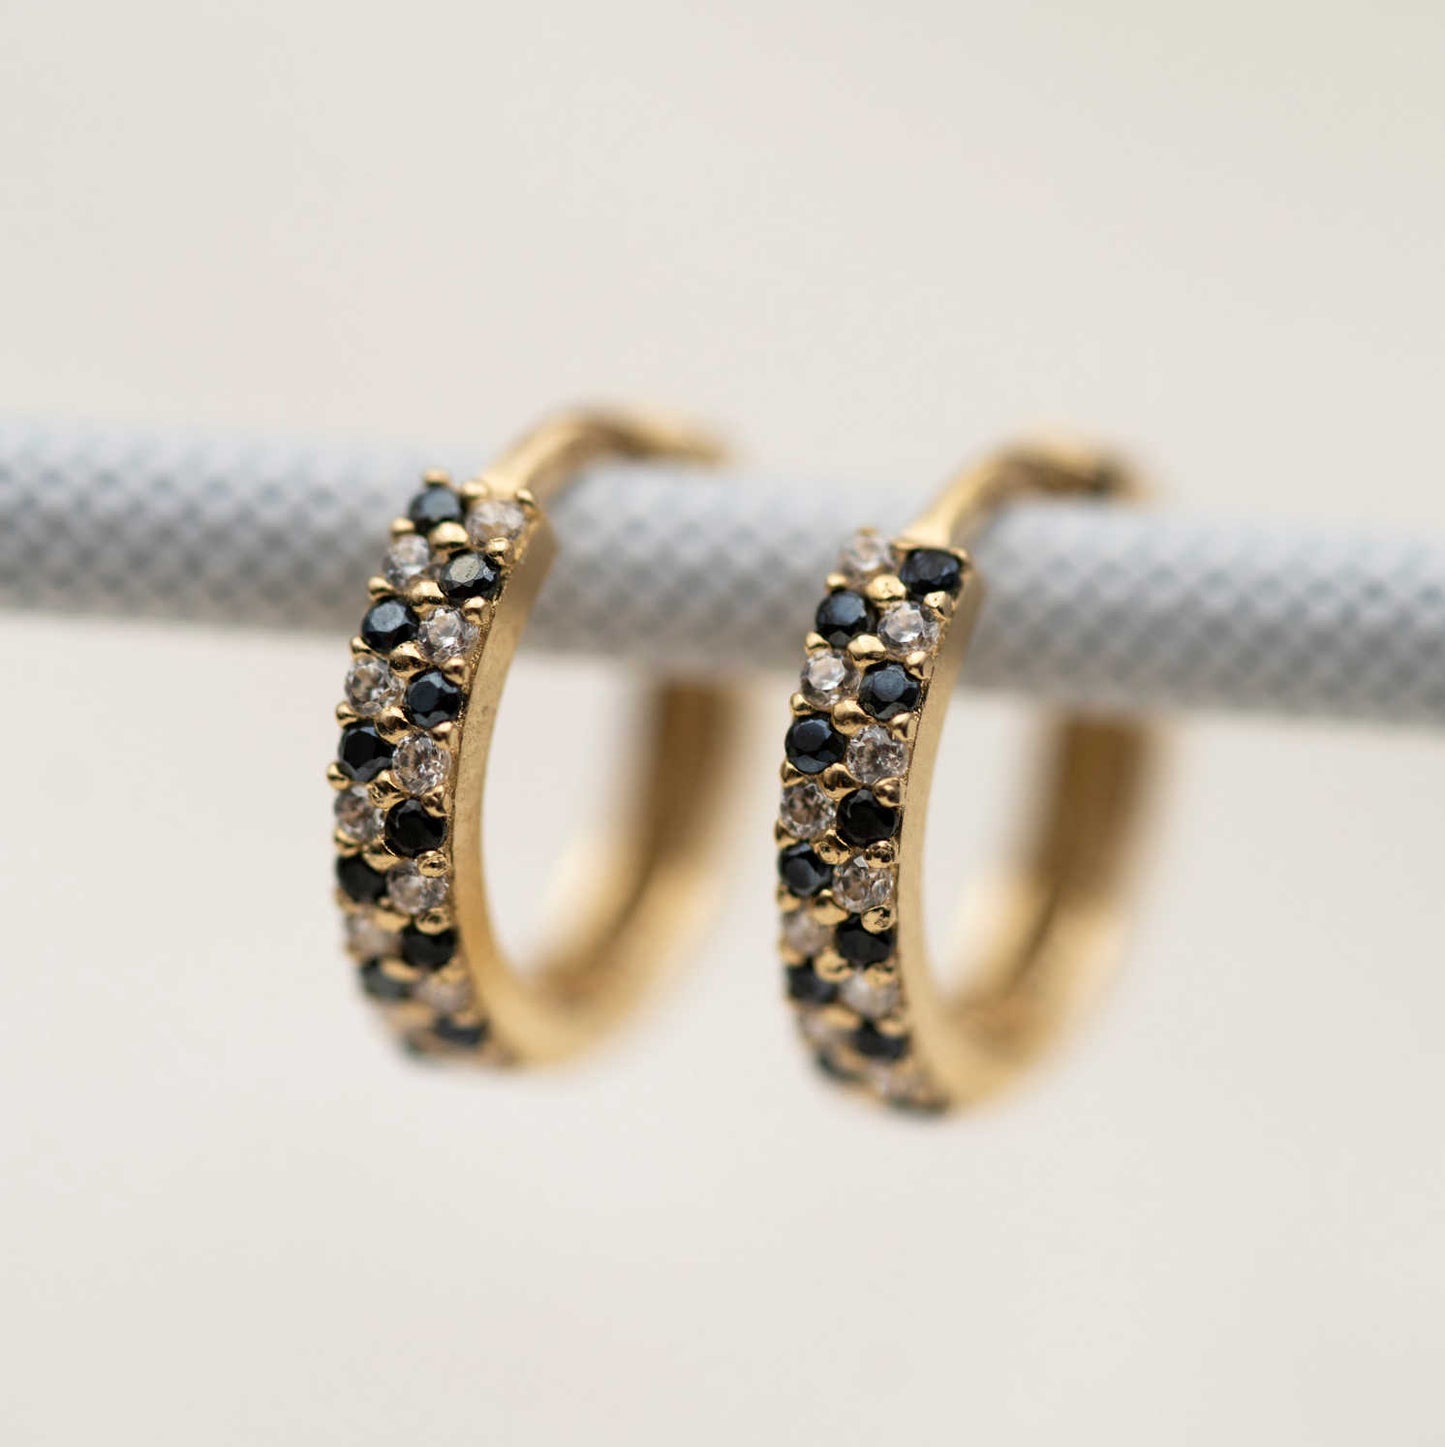 Øreringer i gull med sorte zirkonia (59509)